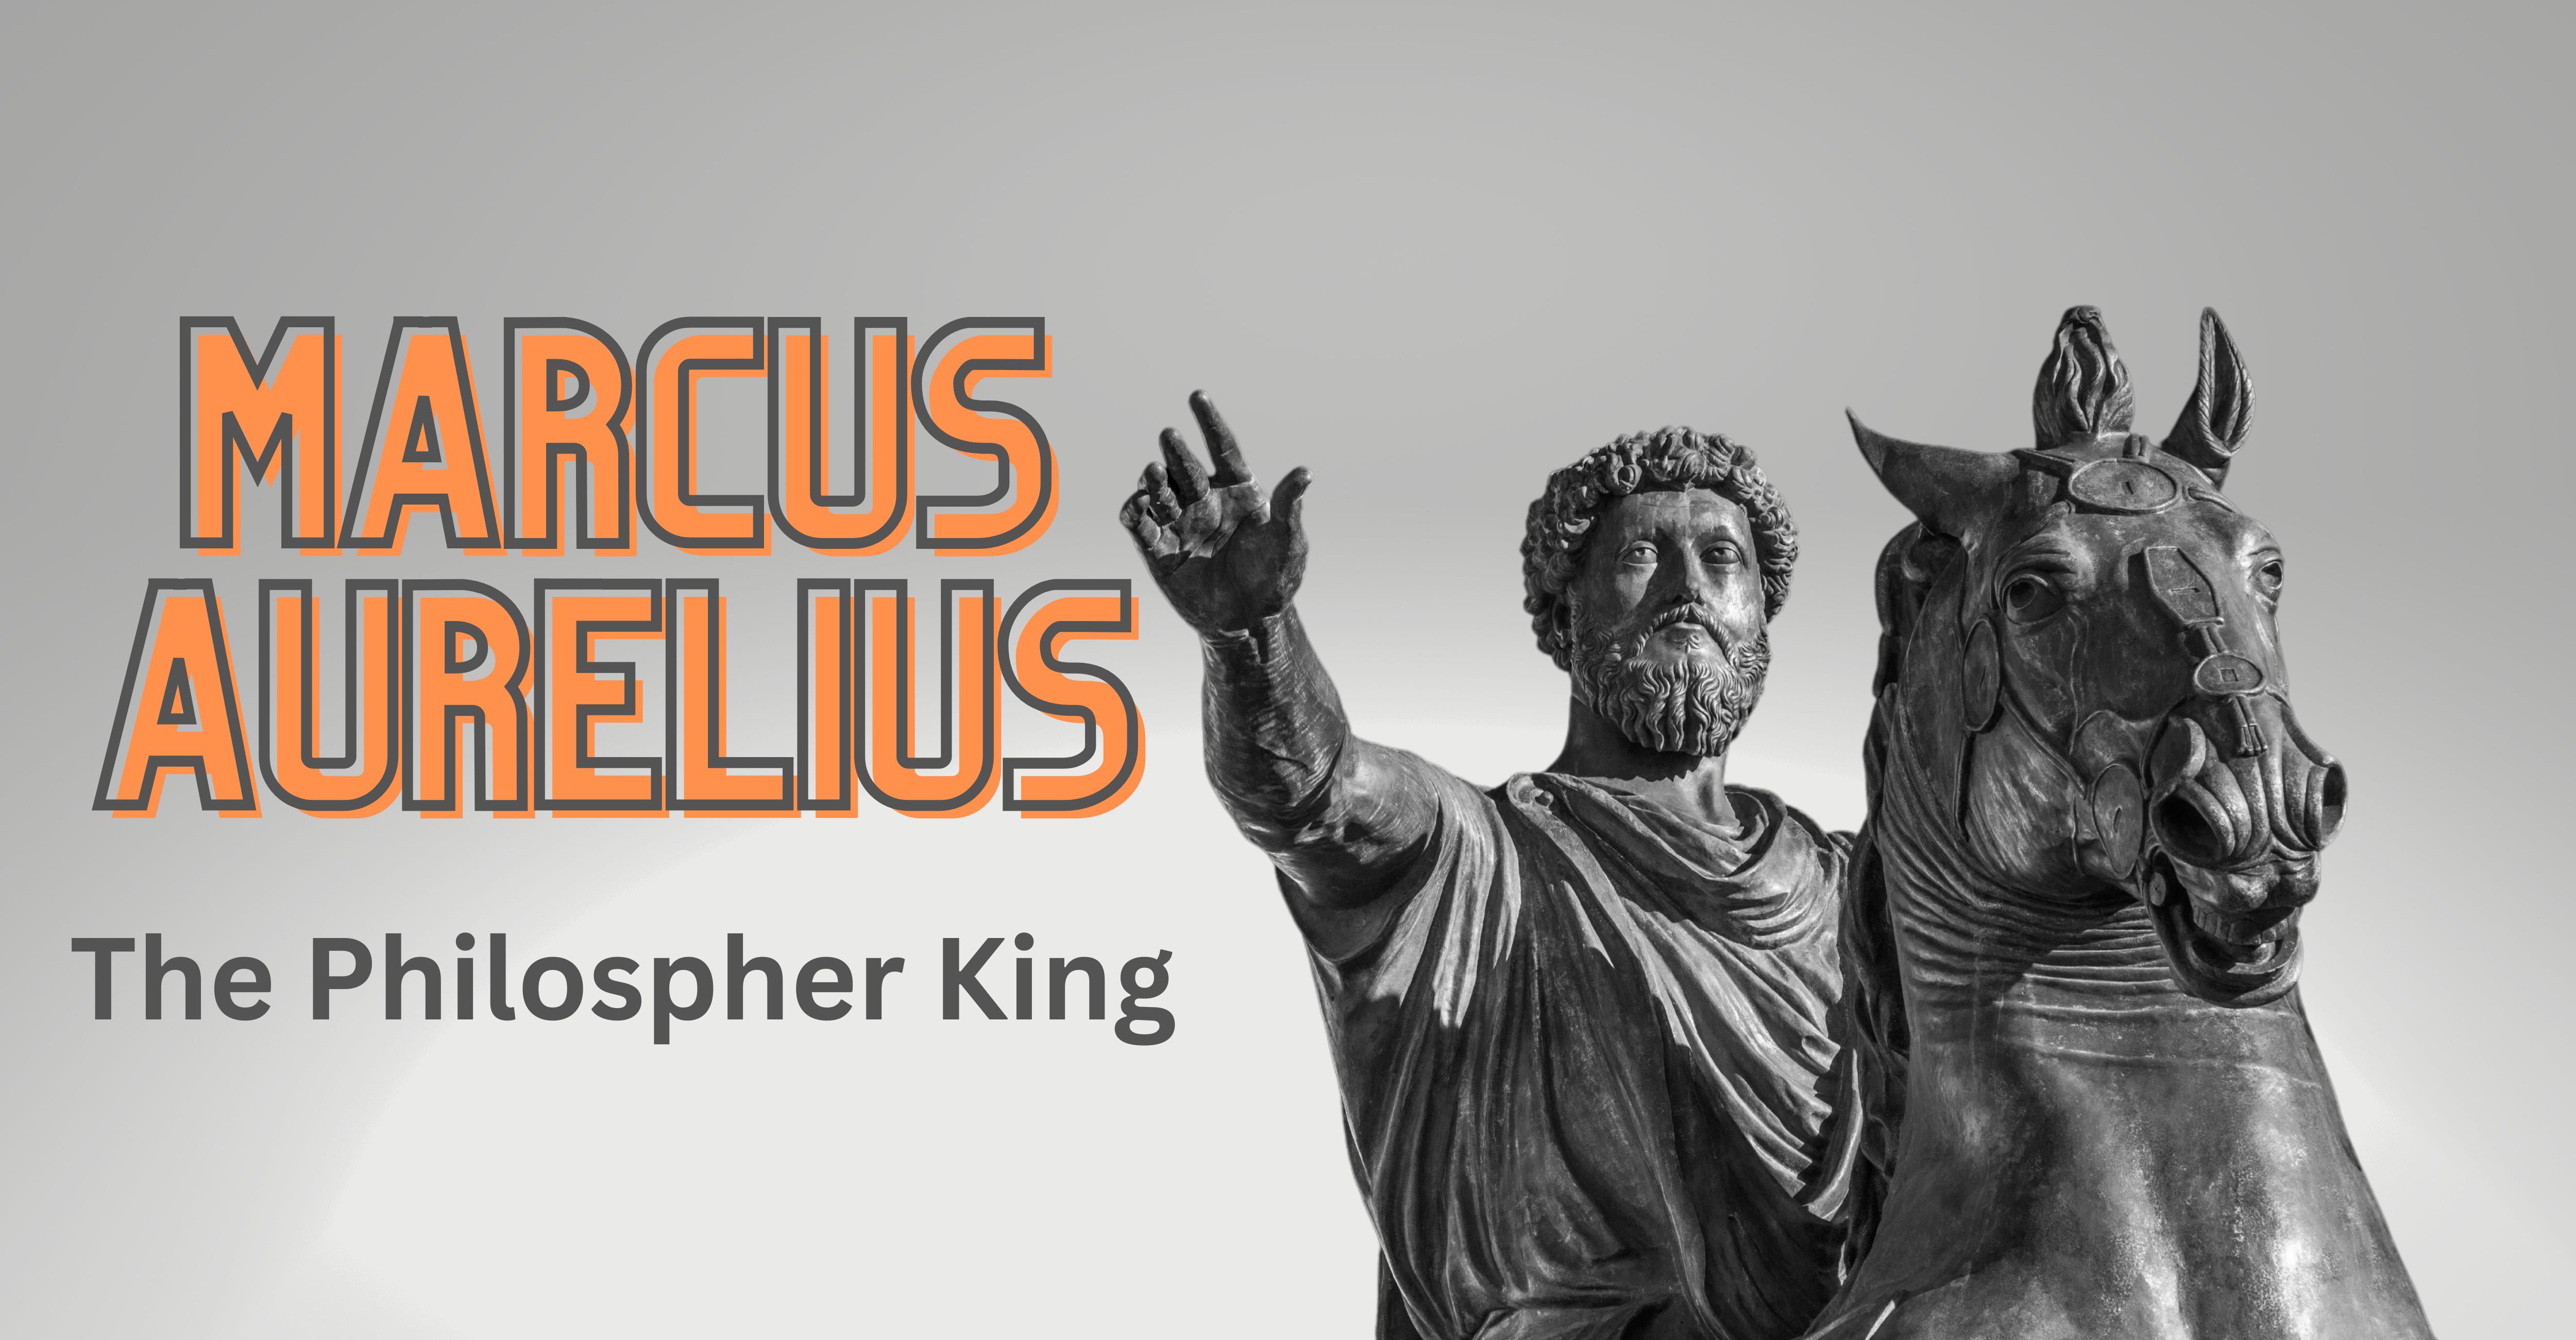 Marcus Aurelius on a horse statue